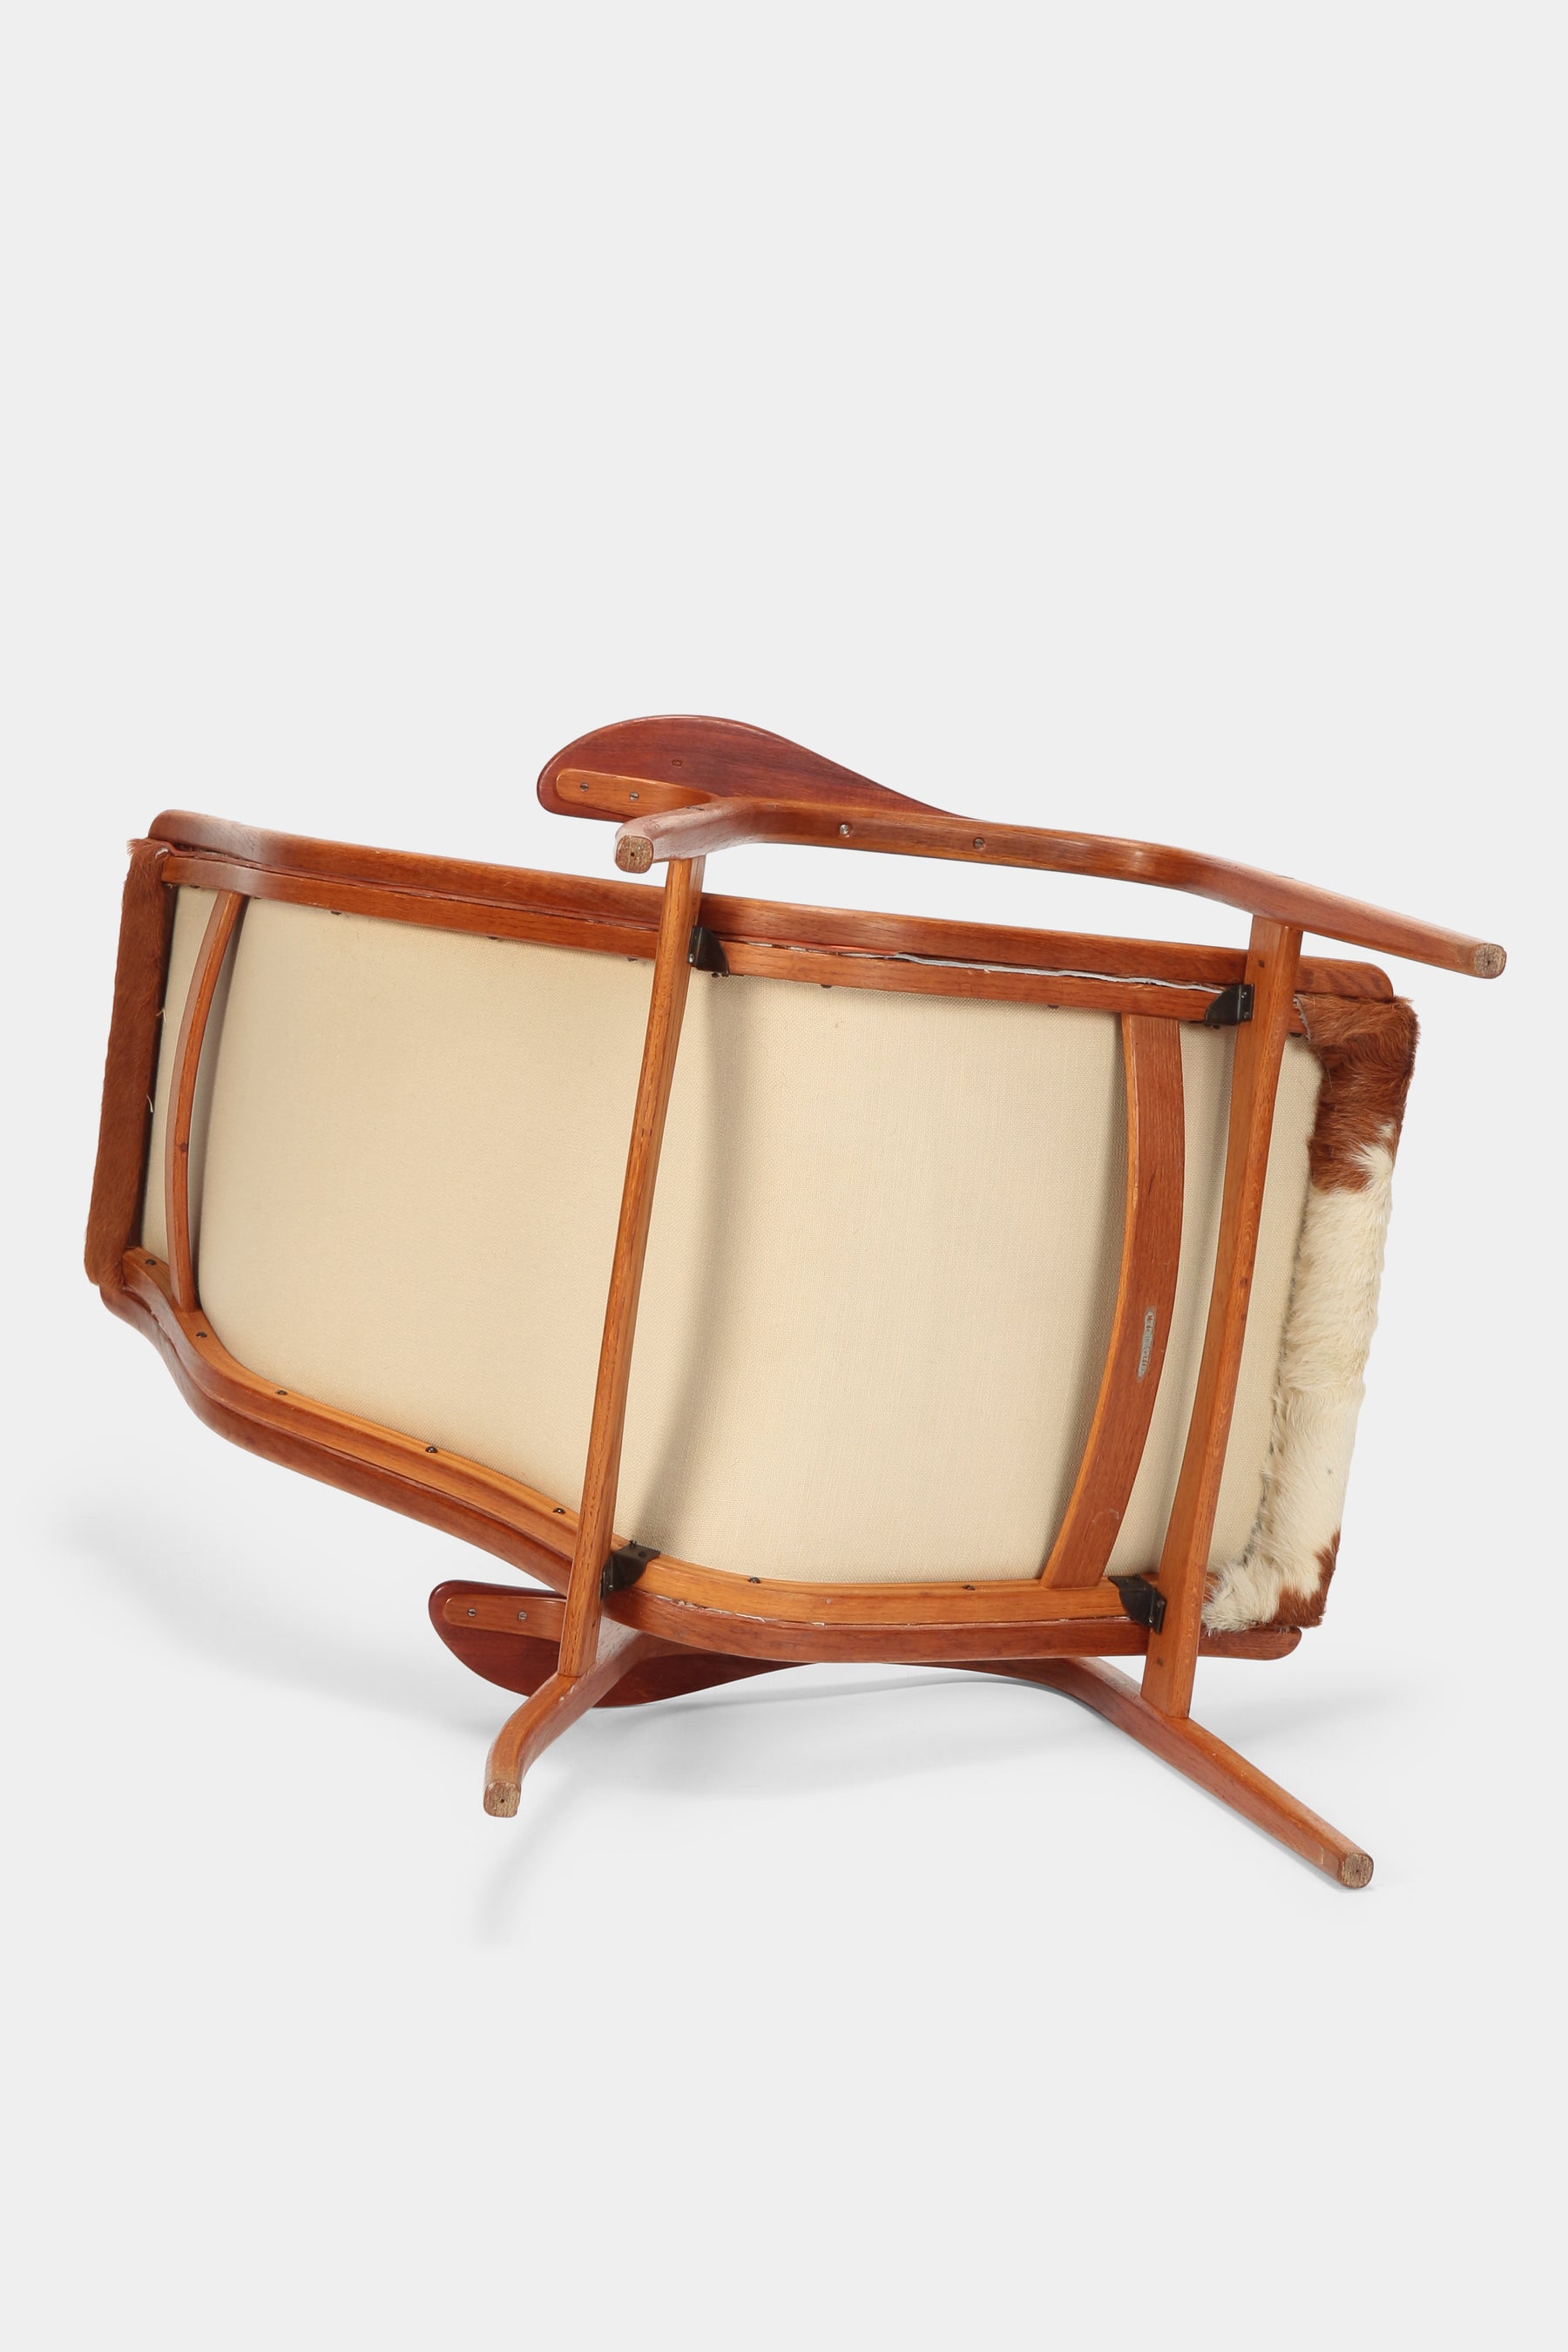 Yngve Ekström "Lamino" Lounge Chairs & Ottoman, Swedese, 50s